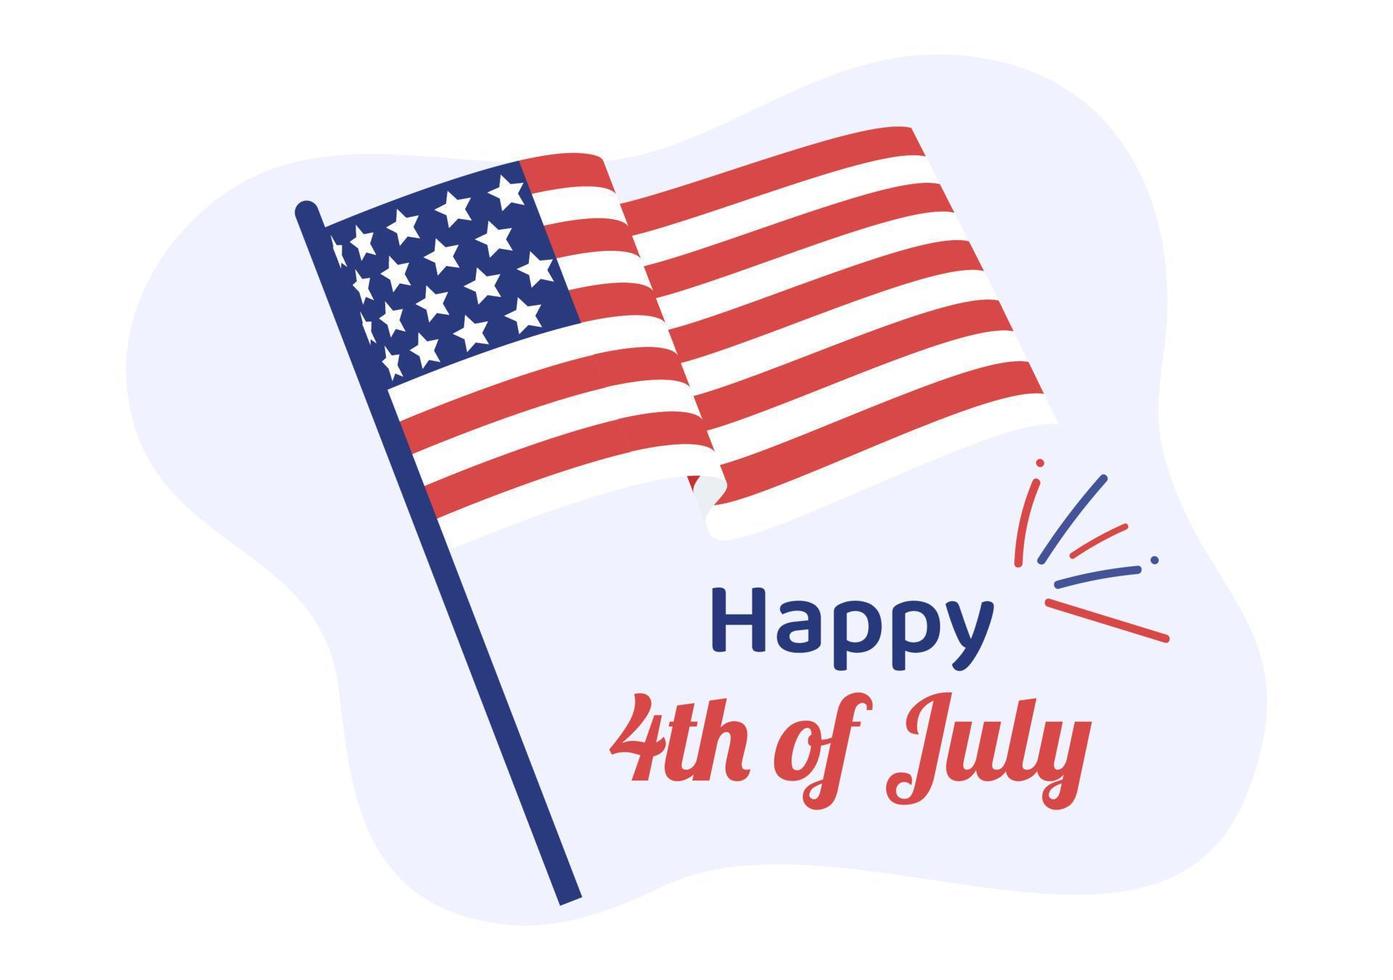 4 de julho feliz dia da independência dos eua ilustração dos desenhos animados com bandeira, balão ou fogos de artifício festivos para pôster ou modelo de plano de fundo vetor